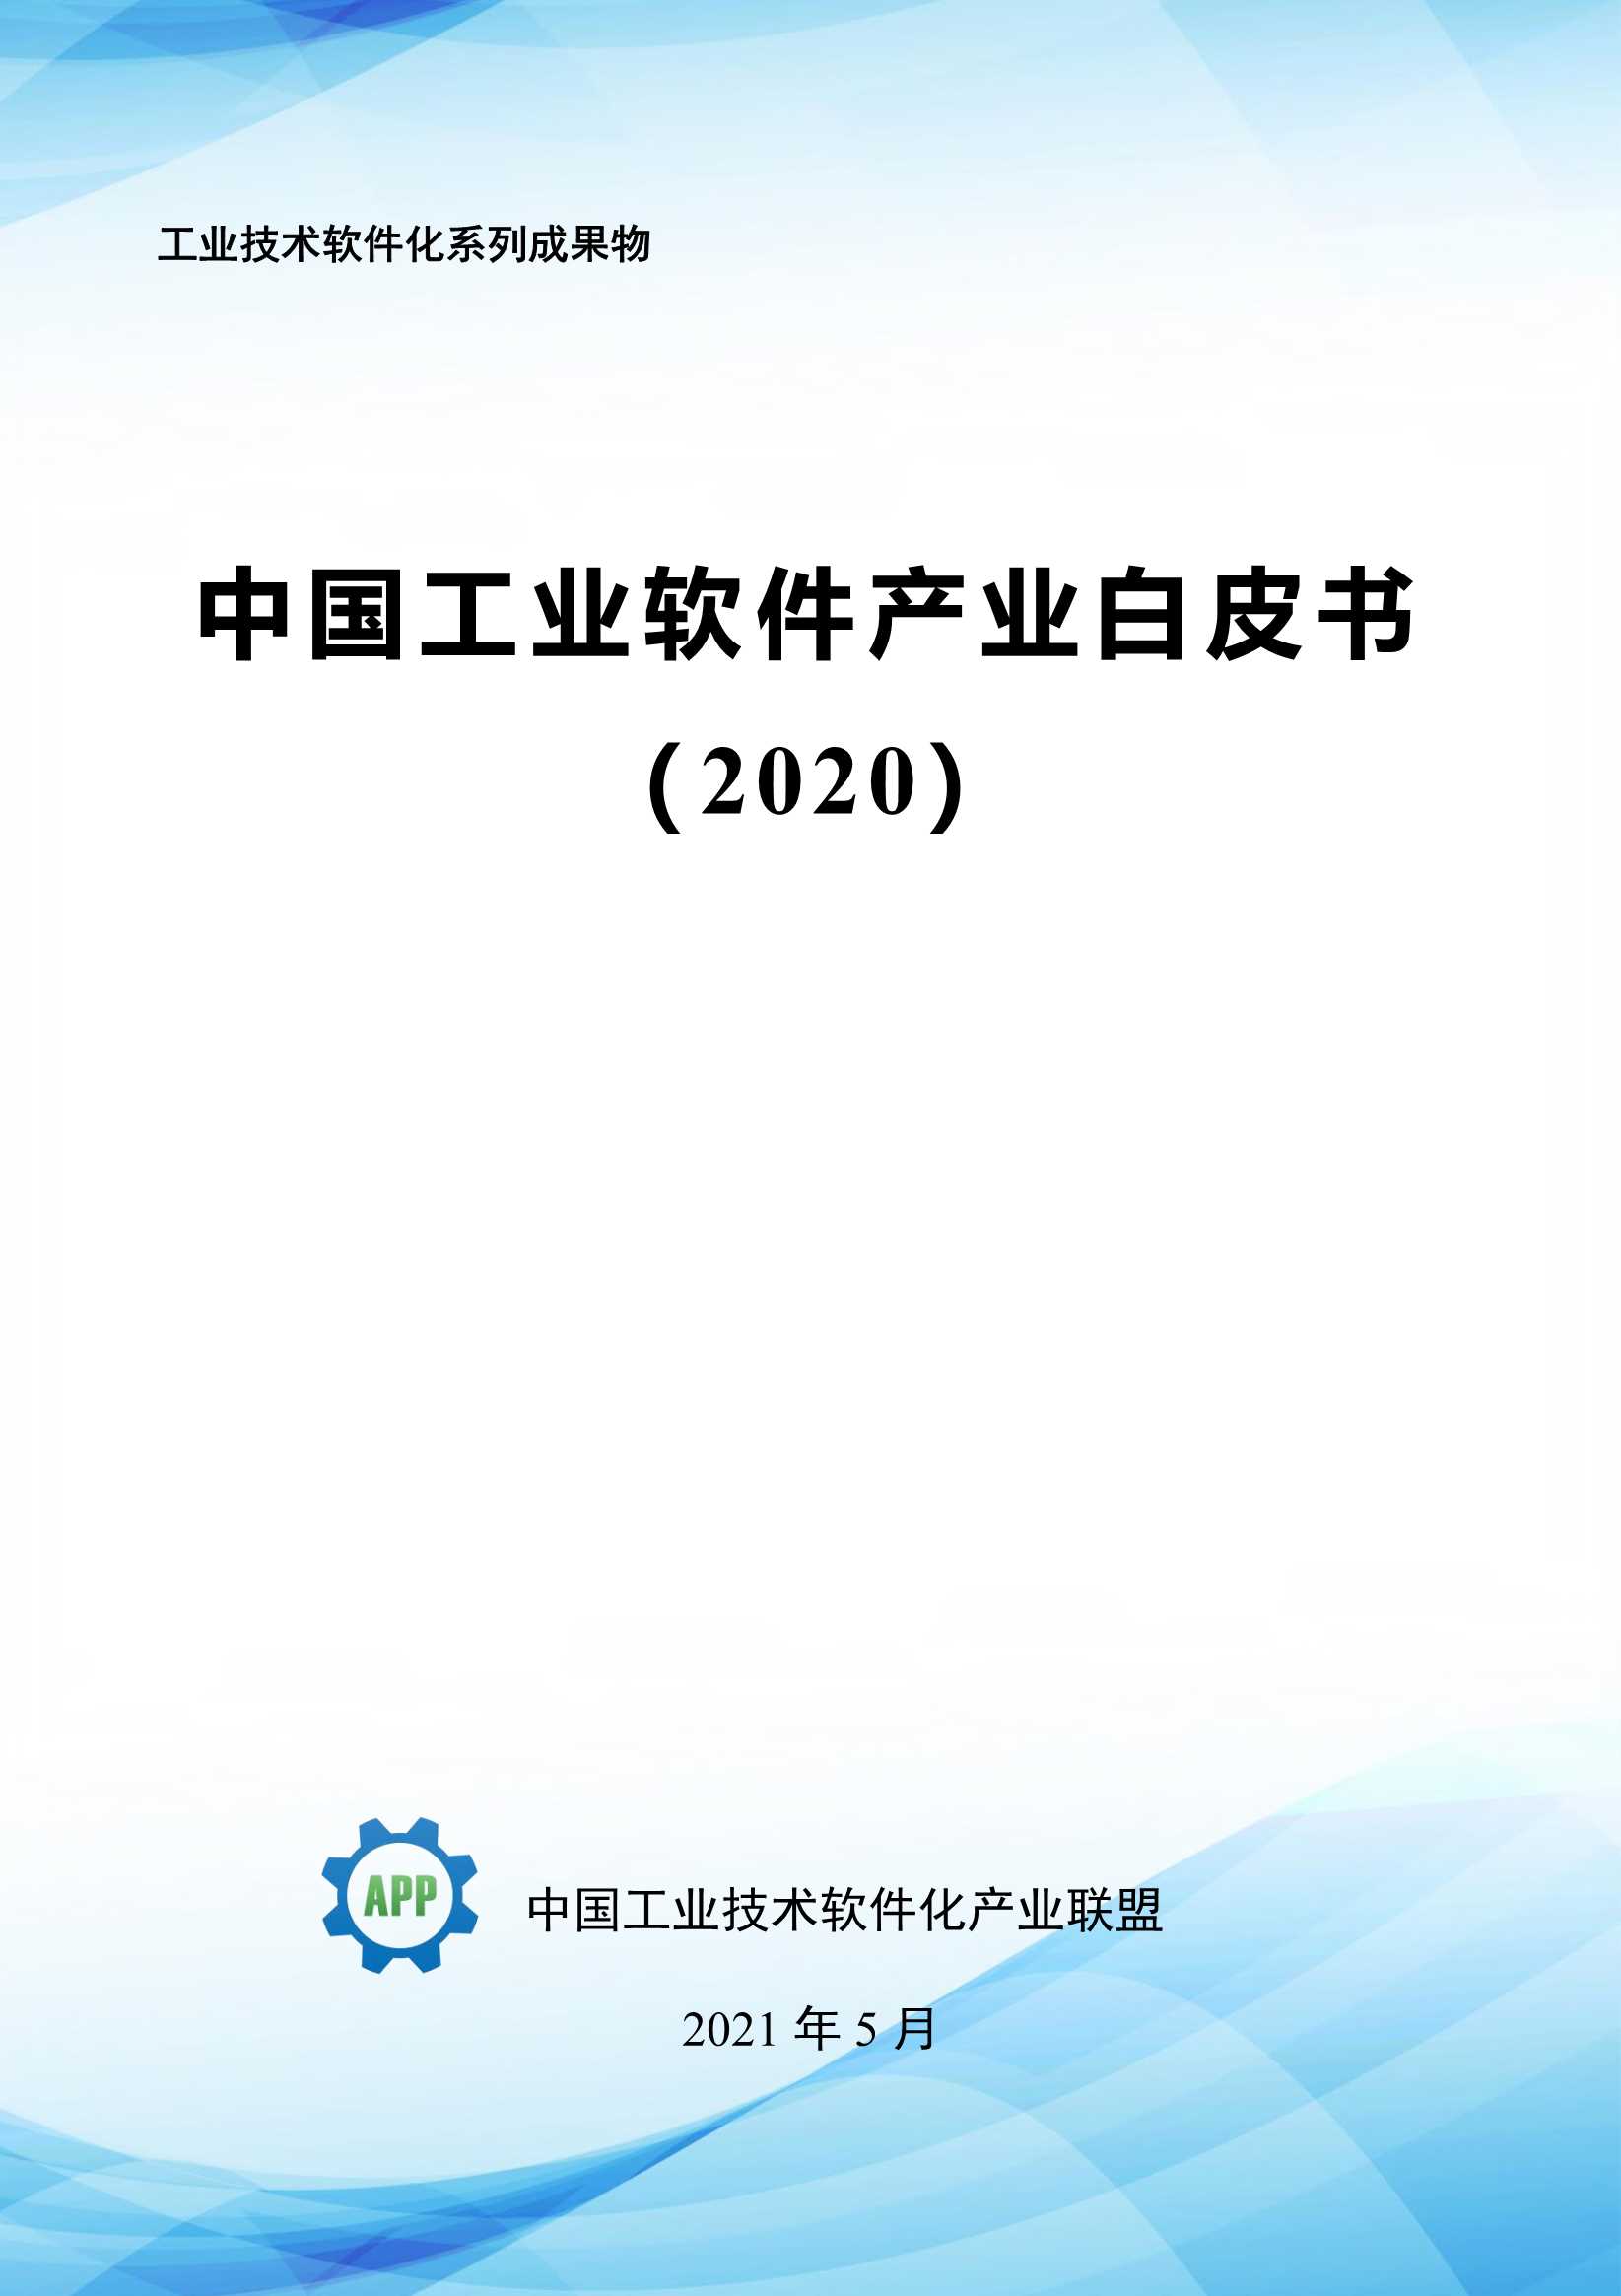 中国工业APP联盟-中国工业软件产业白皮书2020-2021.06-348页